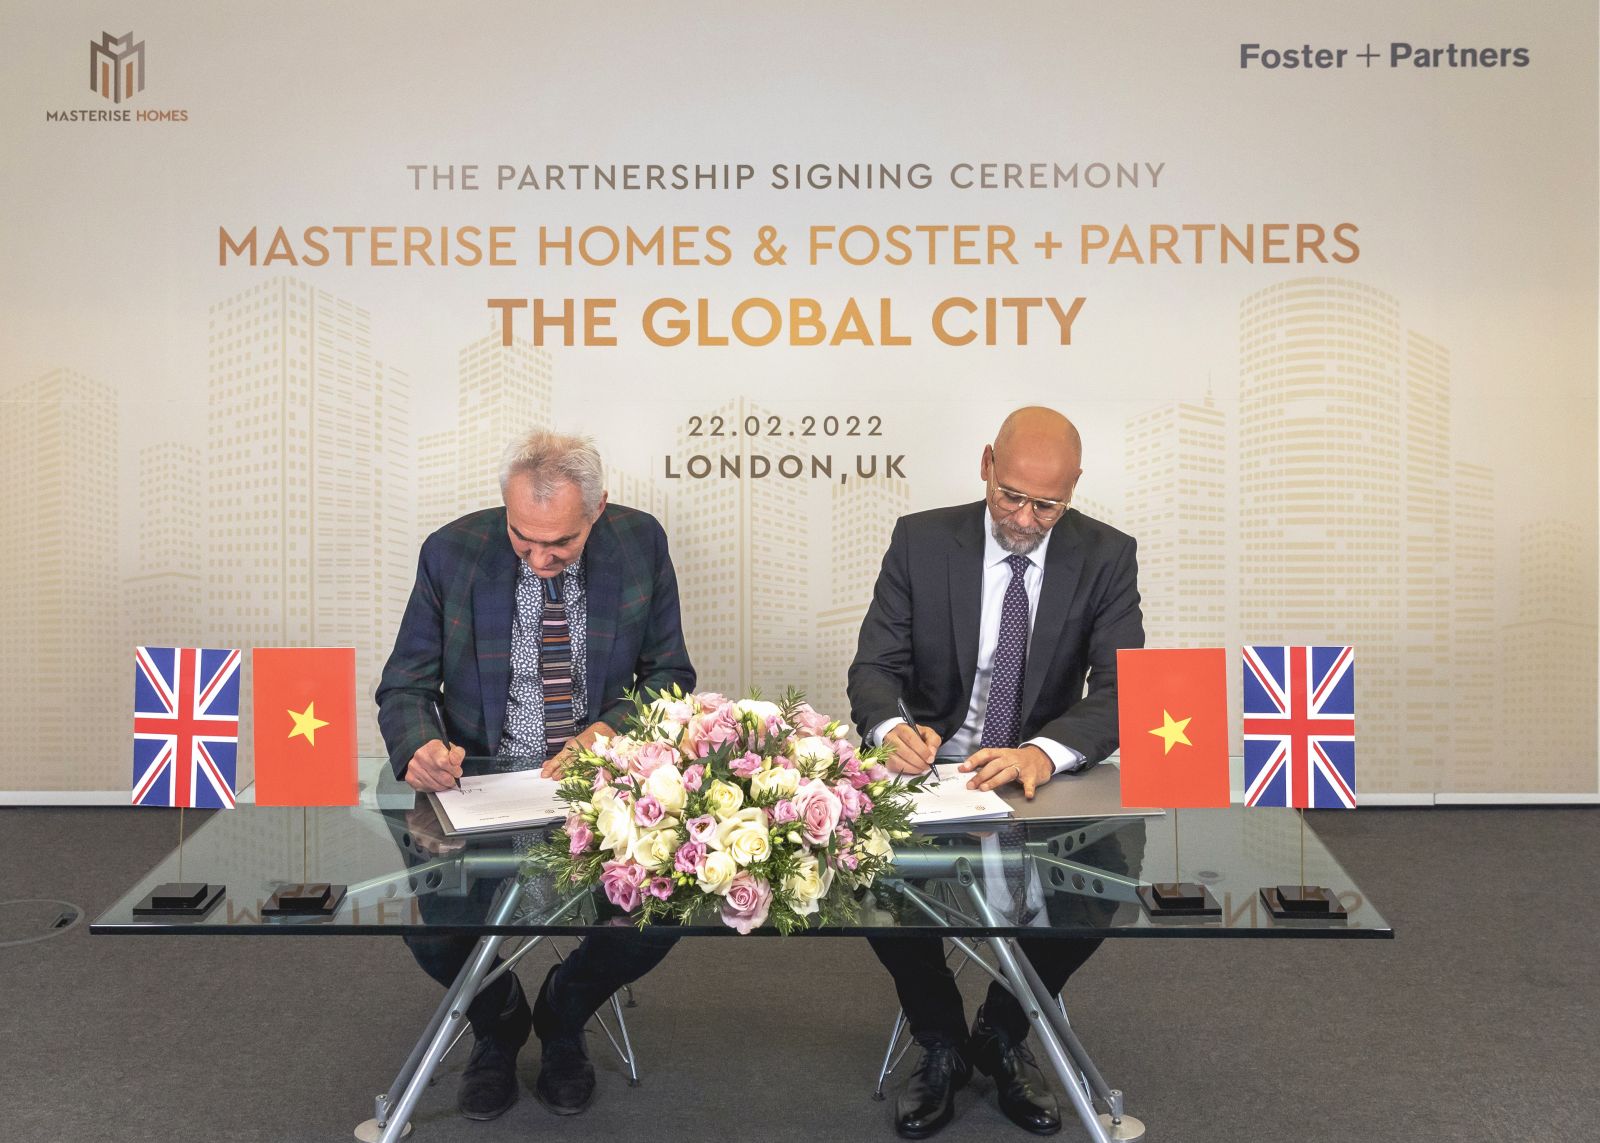 Với sự tương đồng về định hướng và tầm nhìn giữa Foster Partners và Masterise Homes, đây là một mối quan hệ hợp tác cộng hưởng tự nhiên, mang các chuẩn mực bất động sản toàn cầu đến Việt Nam.